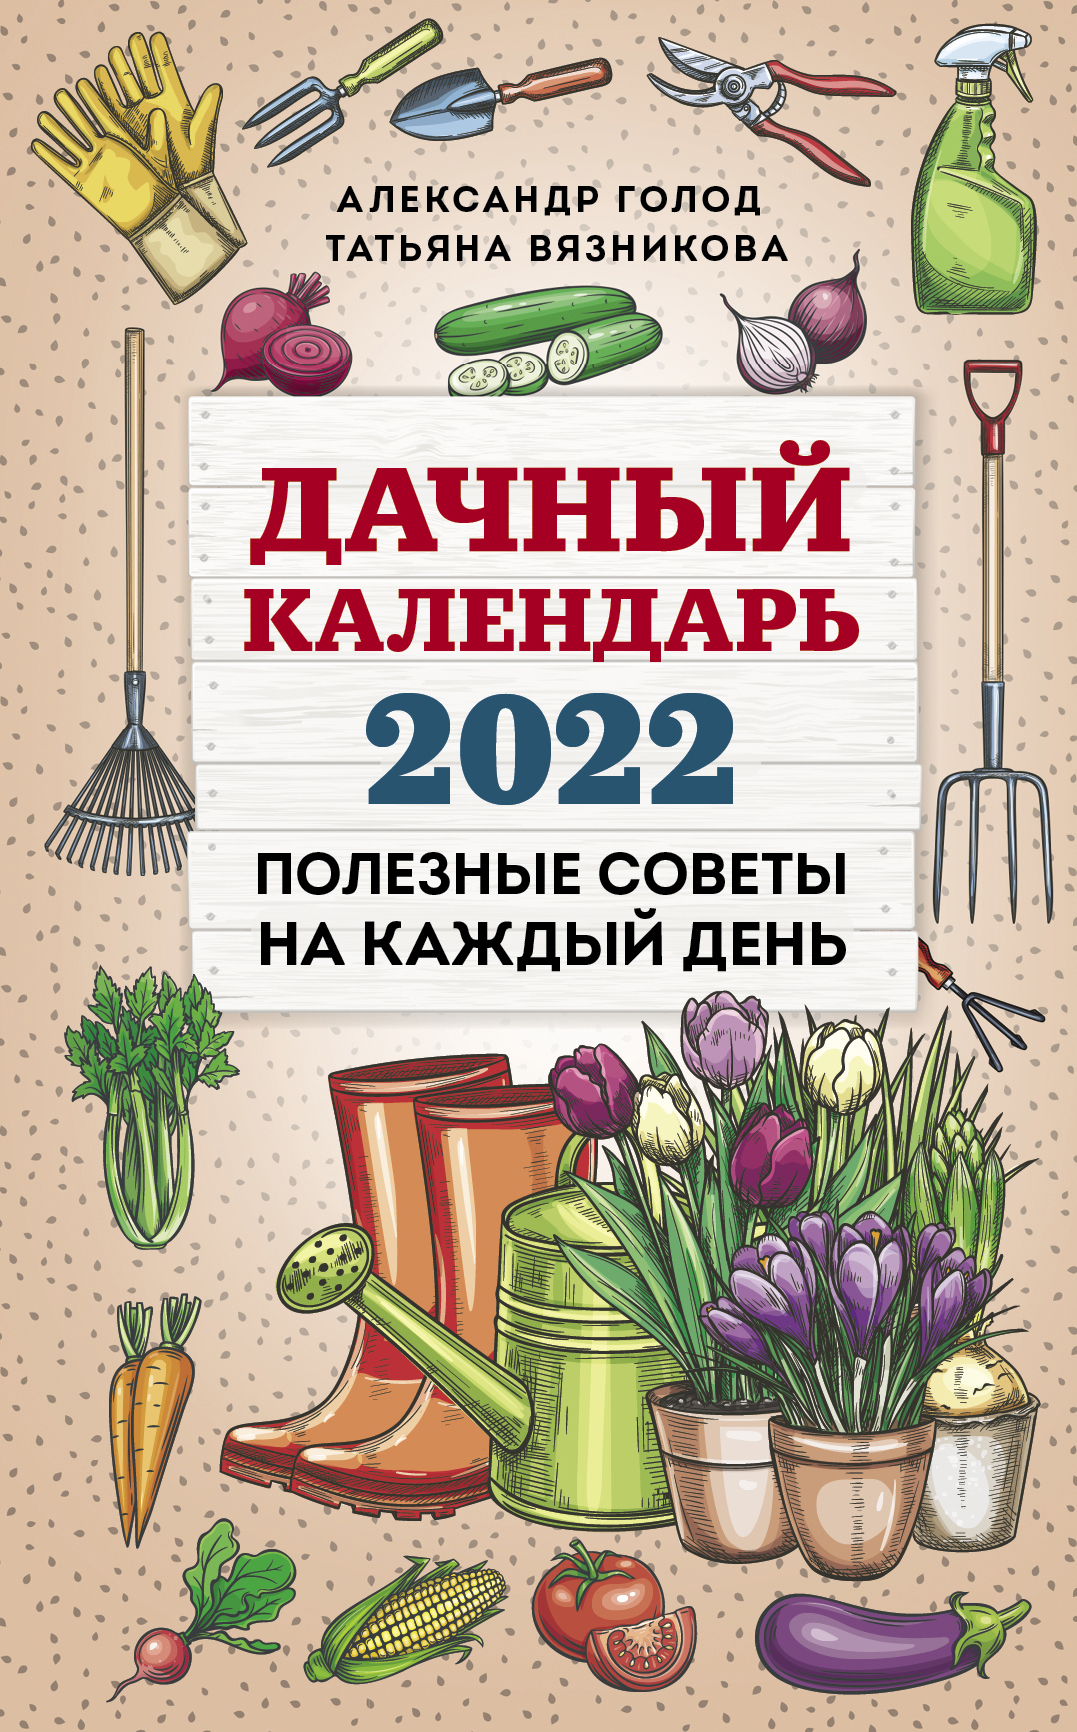 Вязникова Т.В., Голод А.И. Дачный календарь 2022 